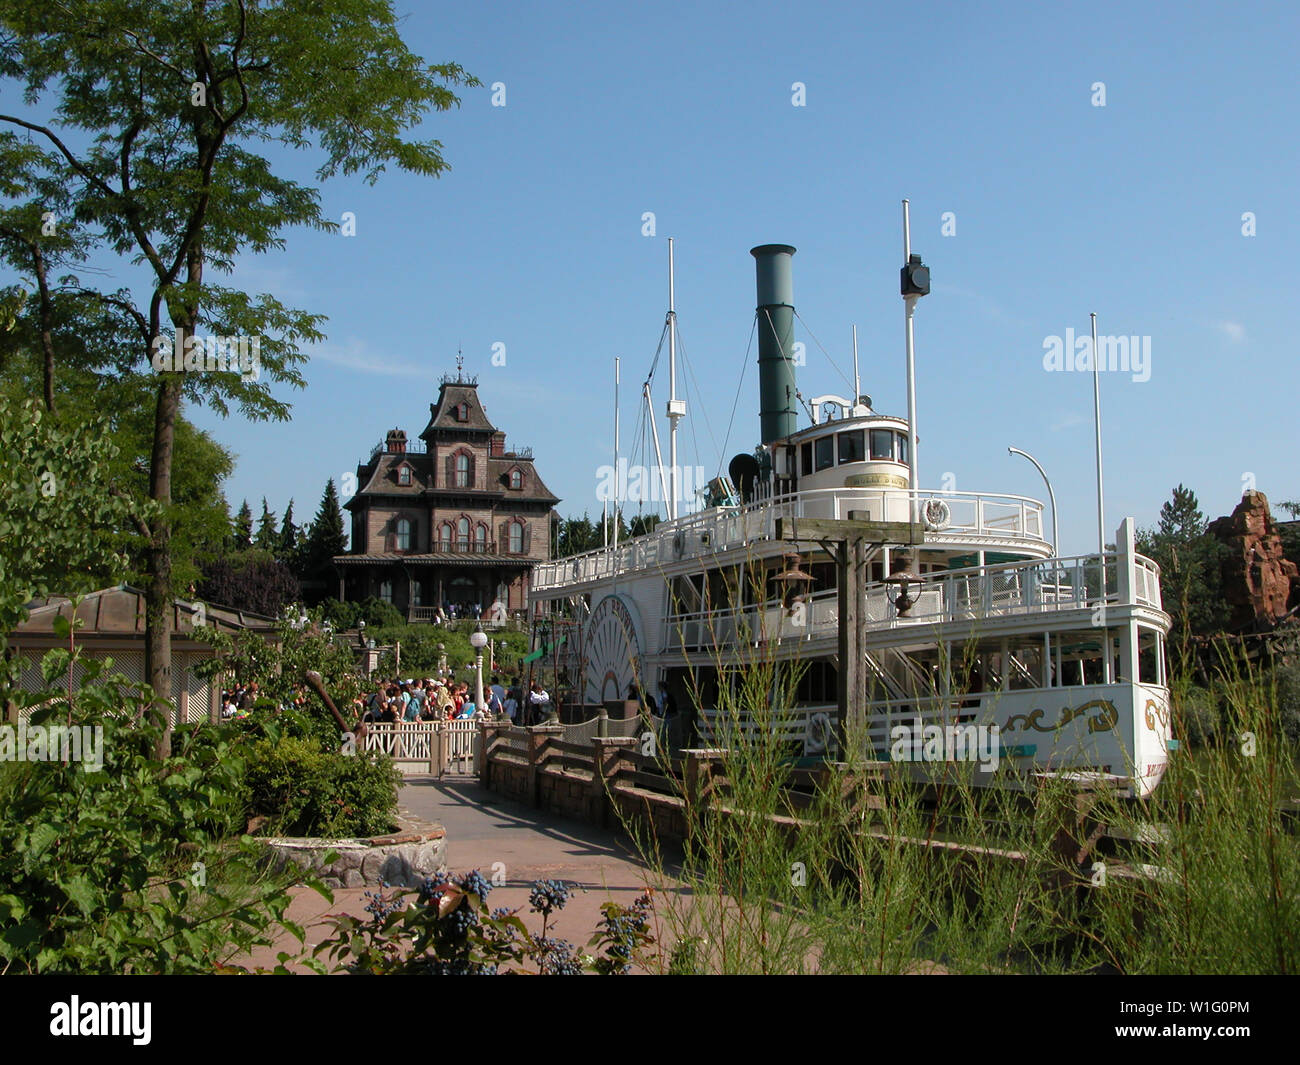 Thunder Mesa Riverboat Landing et Phantom Manor, des locaux contigus dans Frontierland, Disneyland, Paris : sidewheeler riverboat 'Molly Brown' prend une autre charge utile d'excursionnistes Banque D'Images